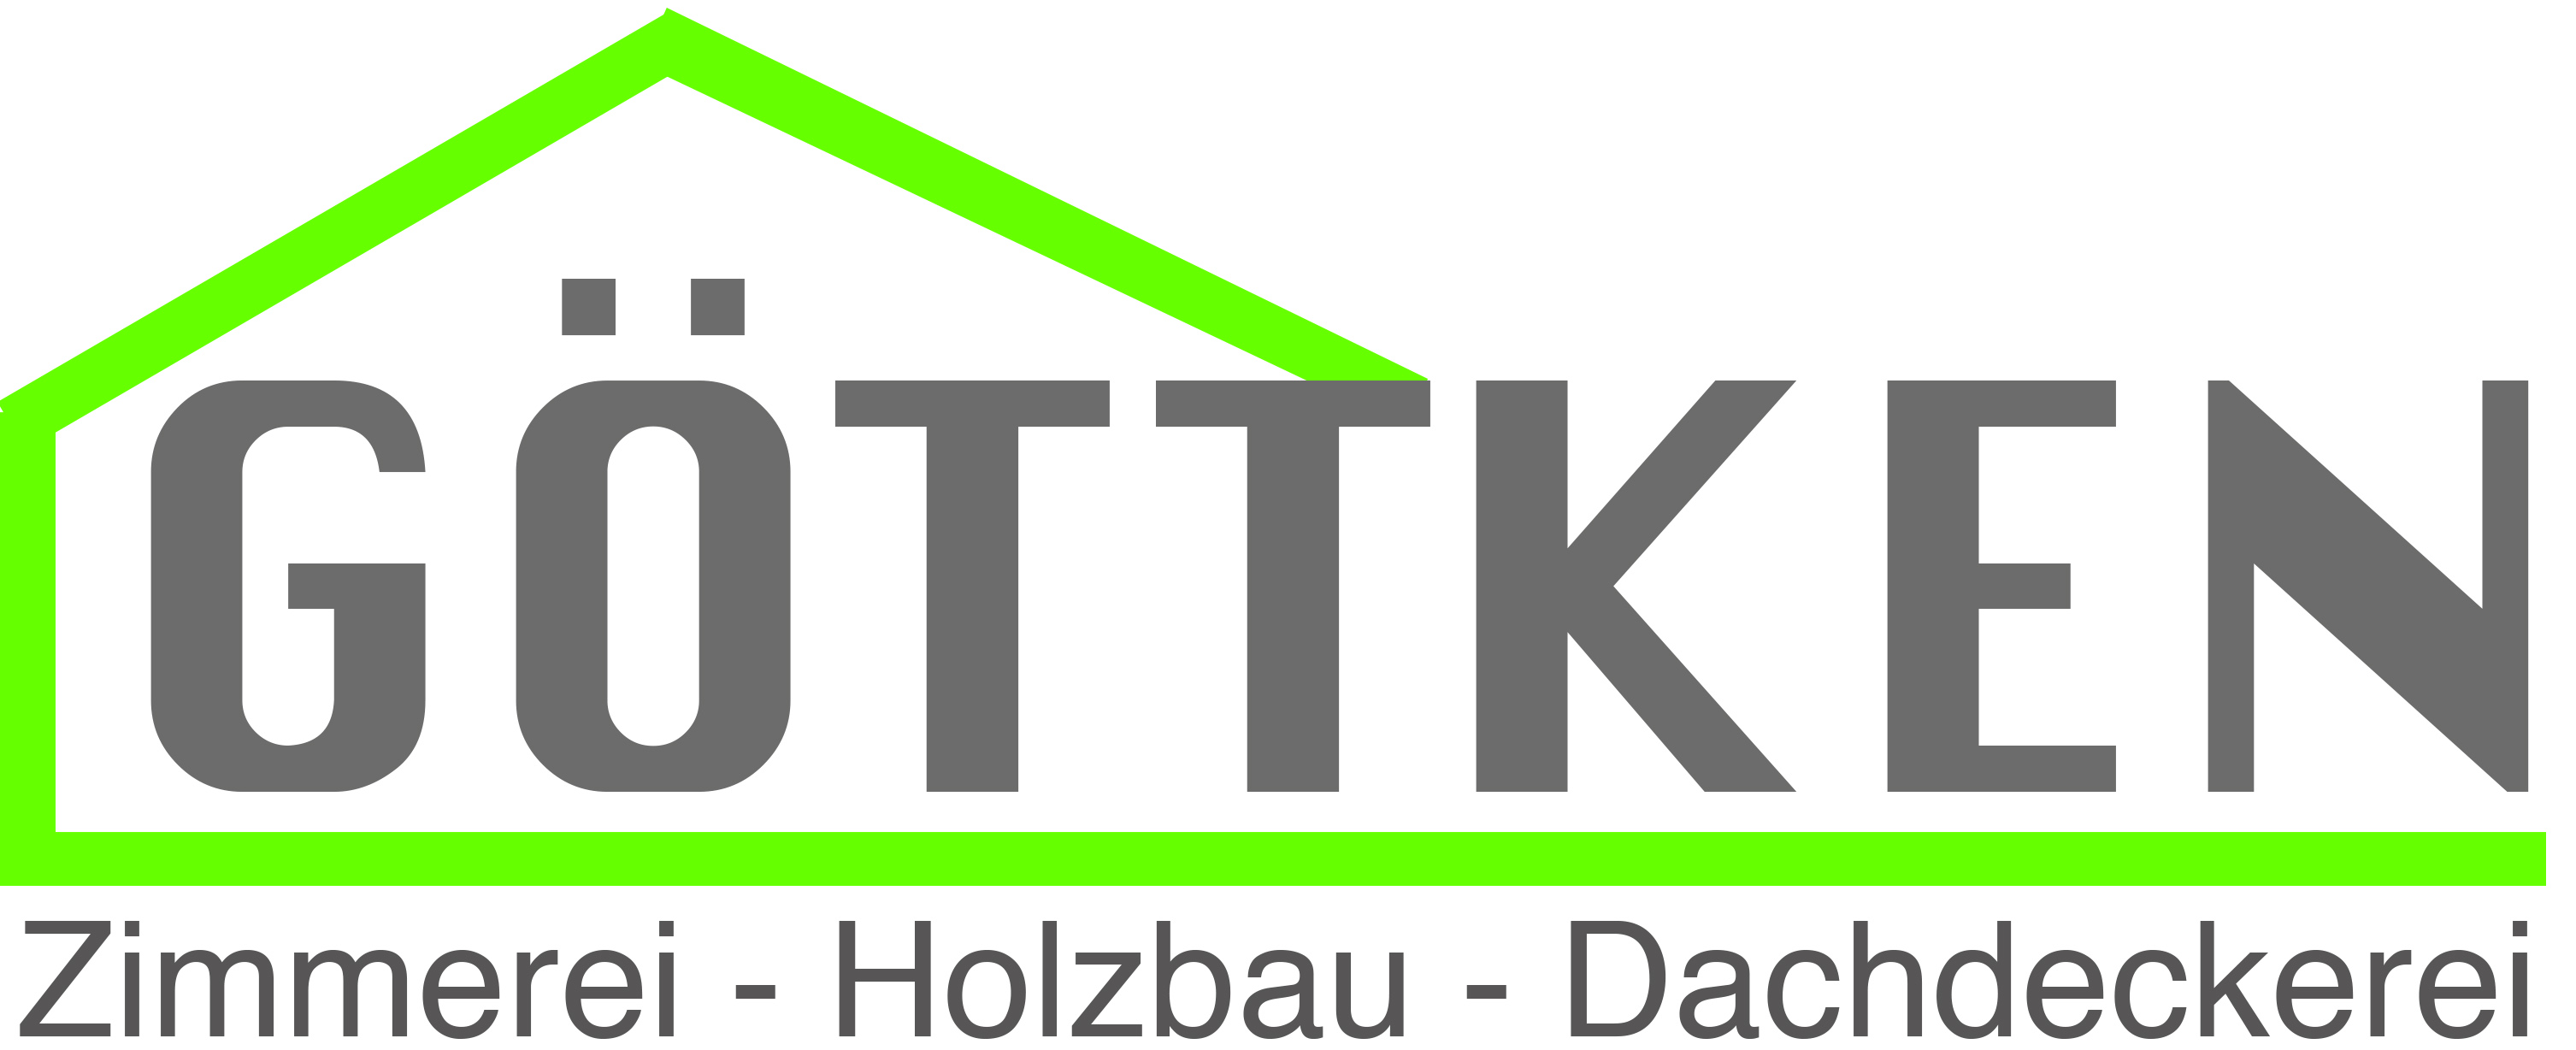 Göttken GmbH & CoKG Recklinghausen